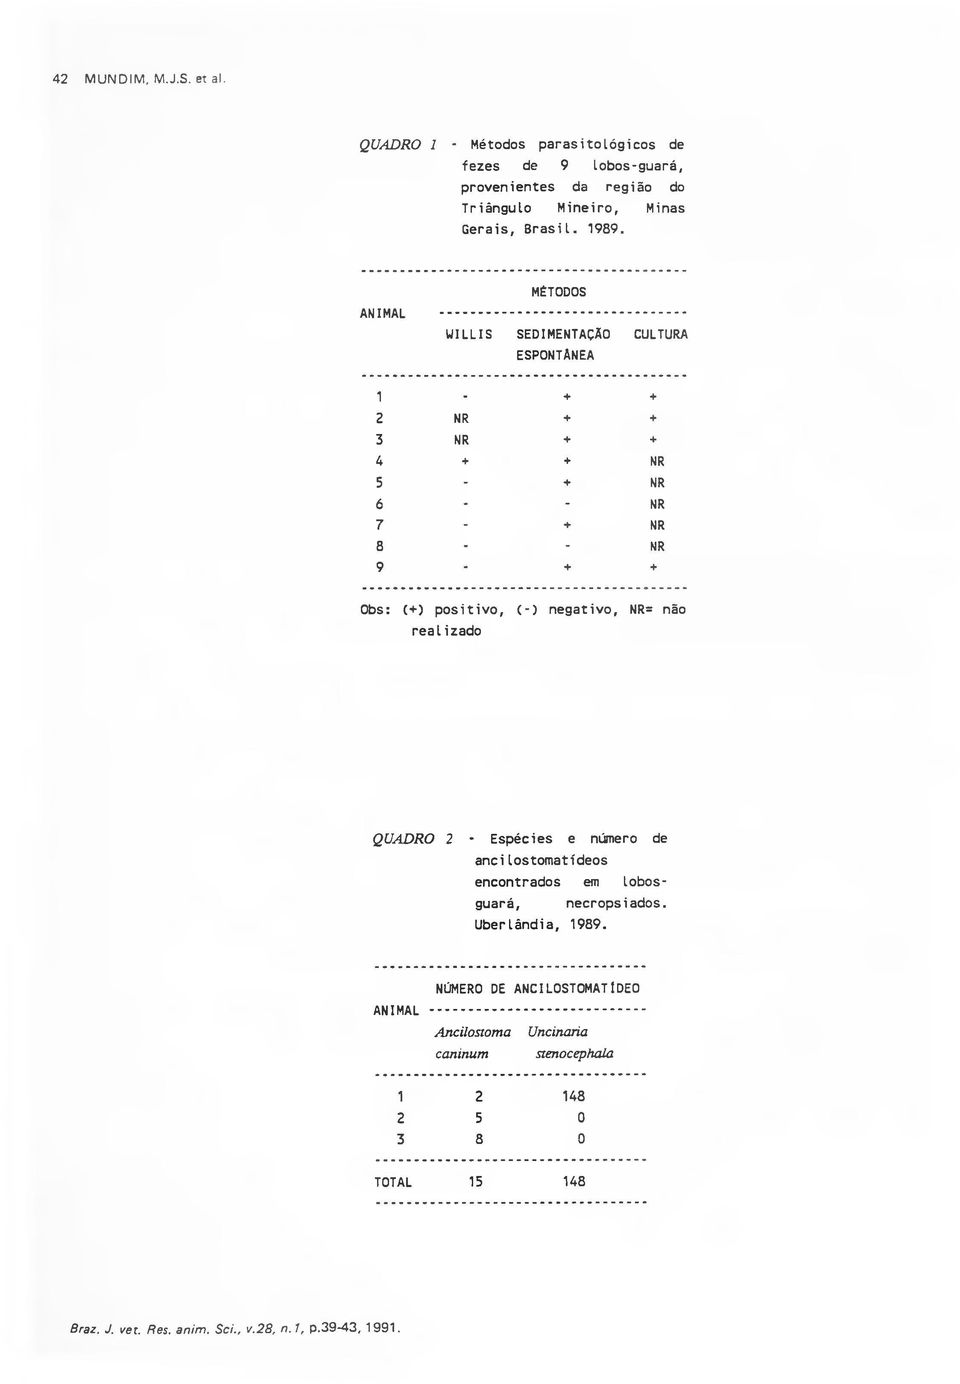 positivo. (-) negativo. NR= não realizado QUADRO 2 - Espécies e número de ancilostomatídeos encontrados em lobosguará, necropsiados. Uberlândia, 1989.